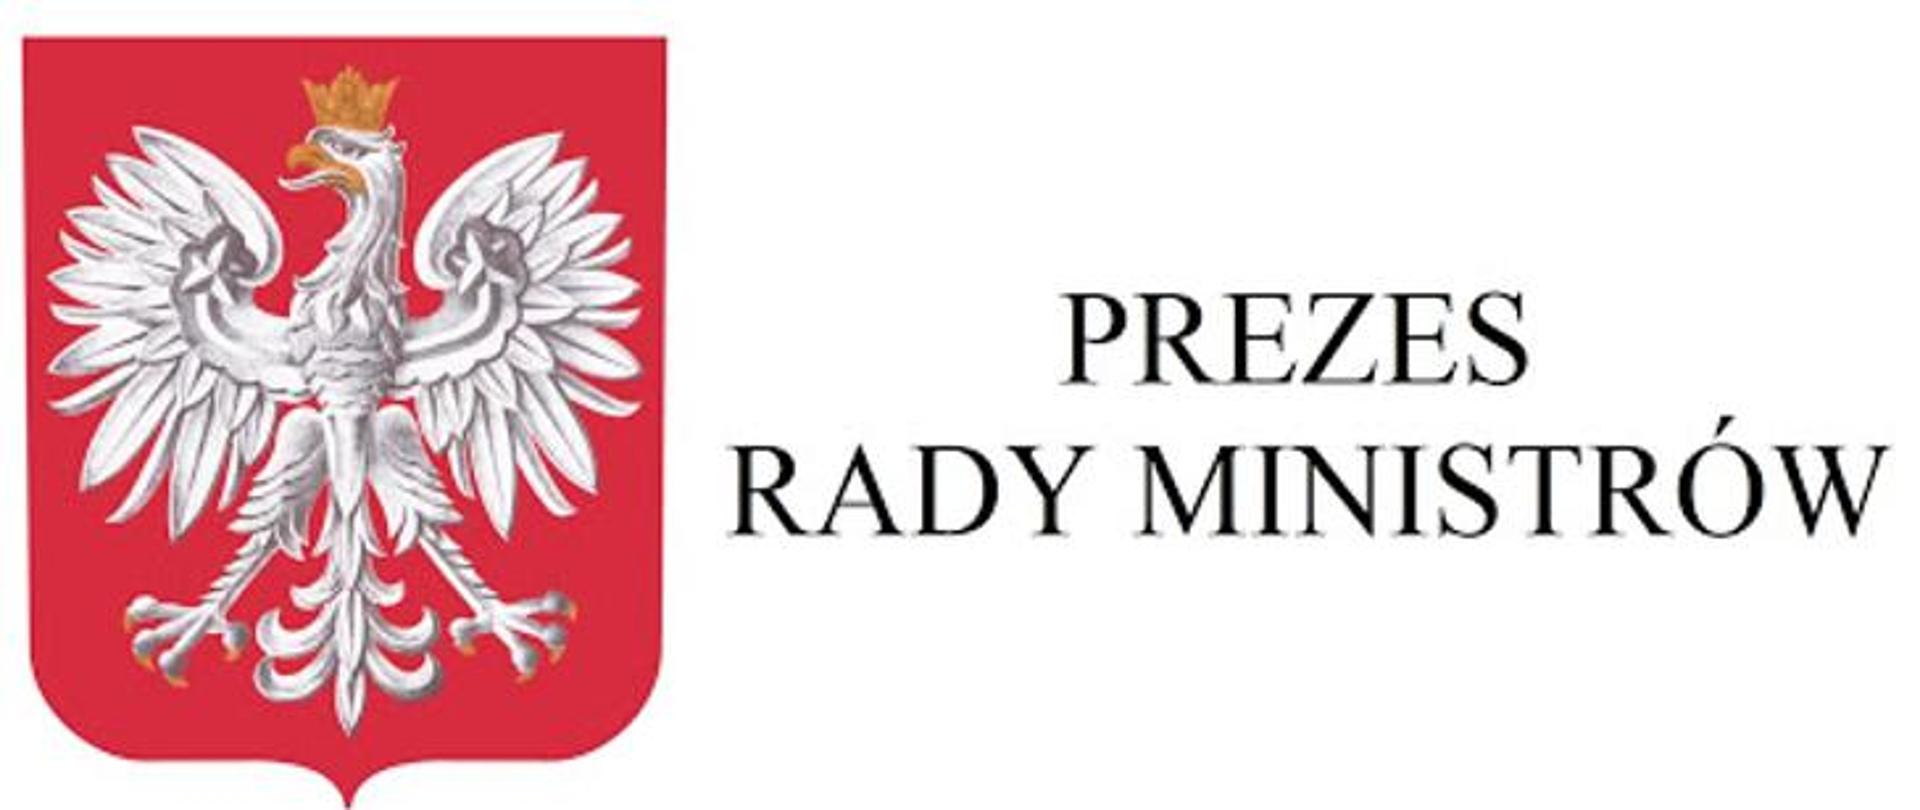 godło polski oraz obok napis Prezes Rady Ministrów